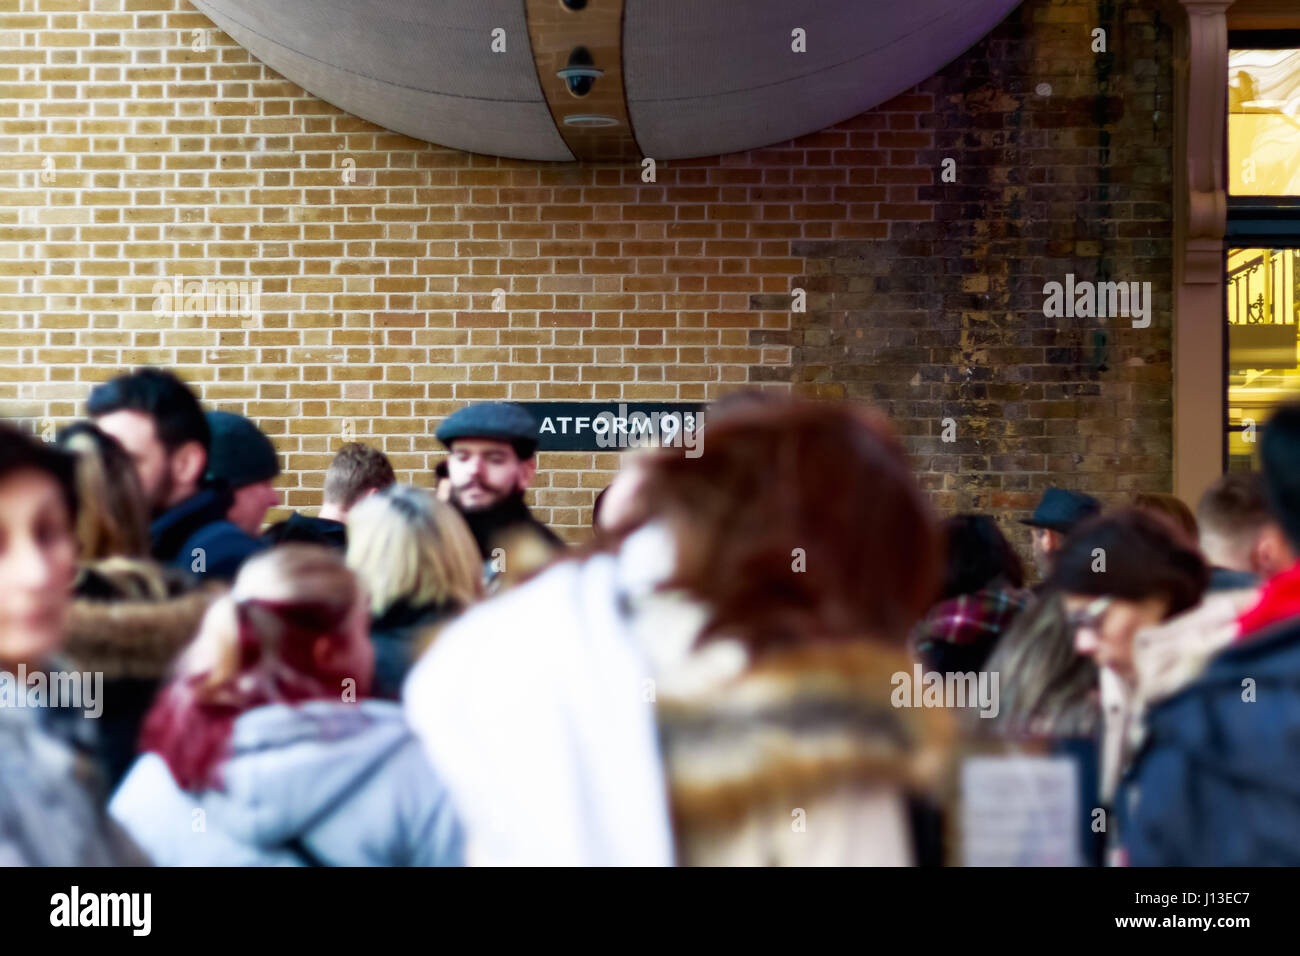 Londres, Royaume-Uni - 28 février 2017 - La plate-forme 9 3/4 de Harry Potter à King's Cross station vu à travers la foule d'attente Banque D'Images